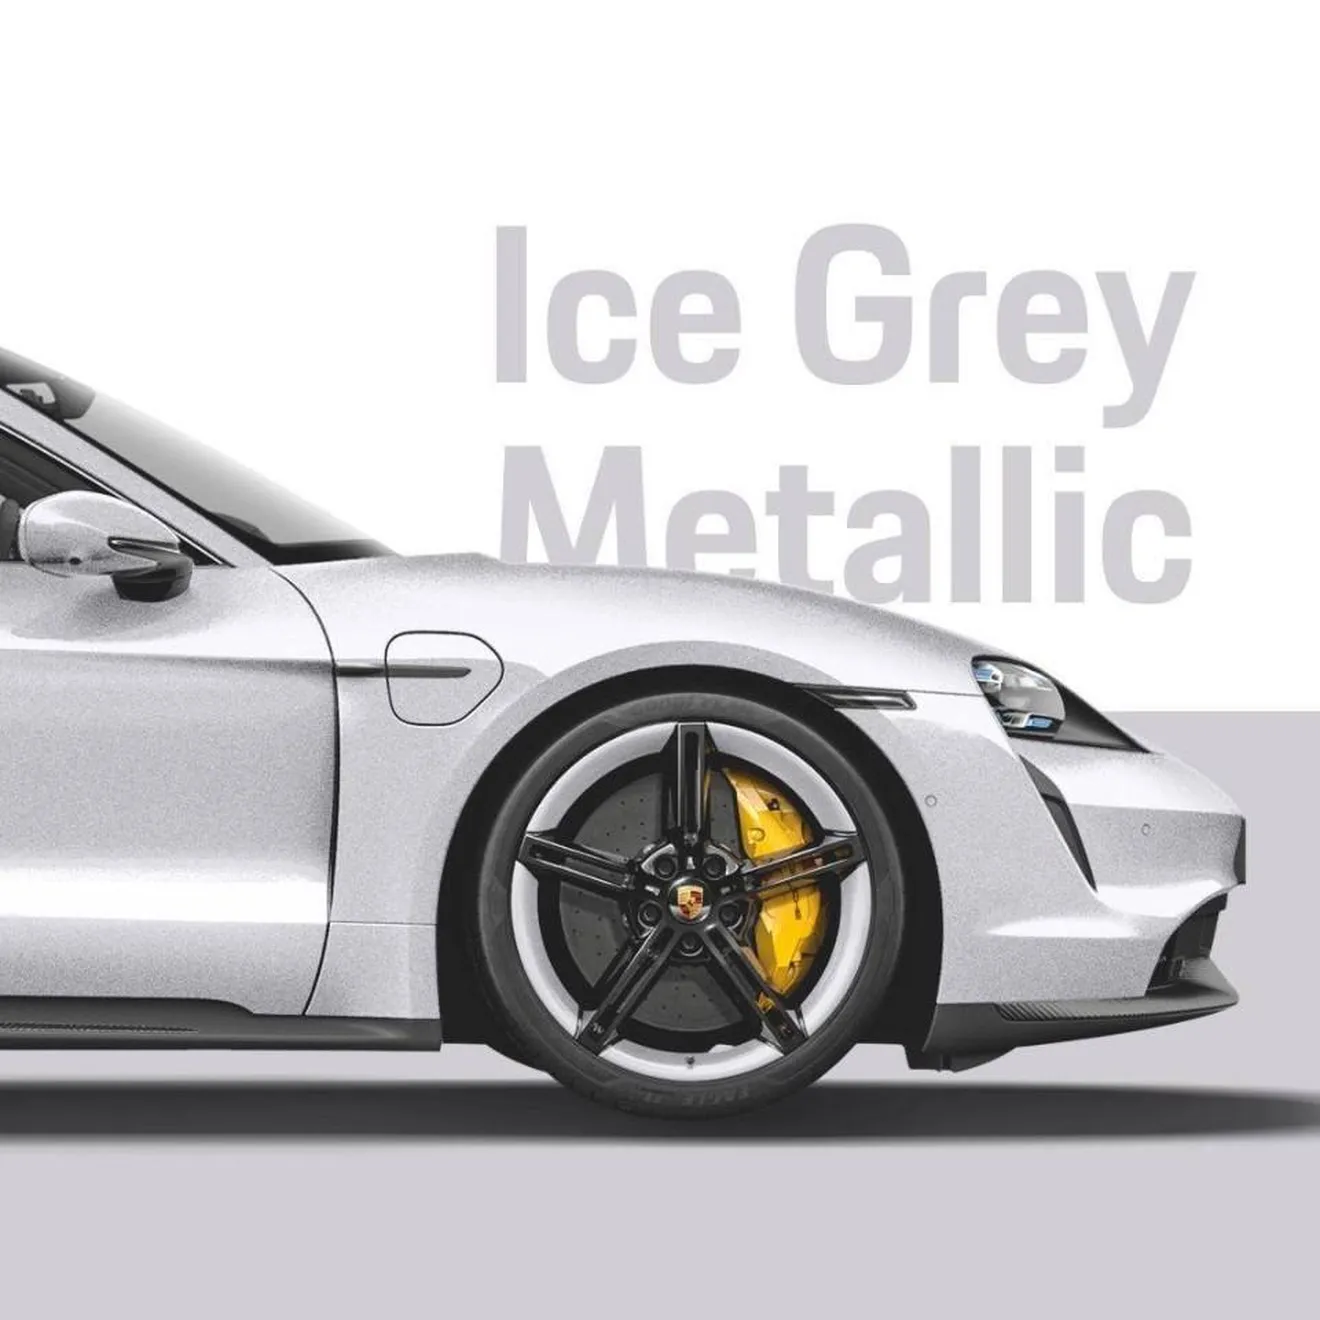 Porsche Exclusive Manufaktur presenta nuevos colores especiales para el Taycan